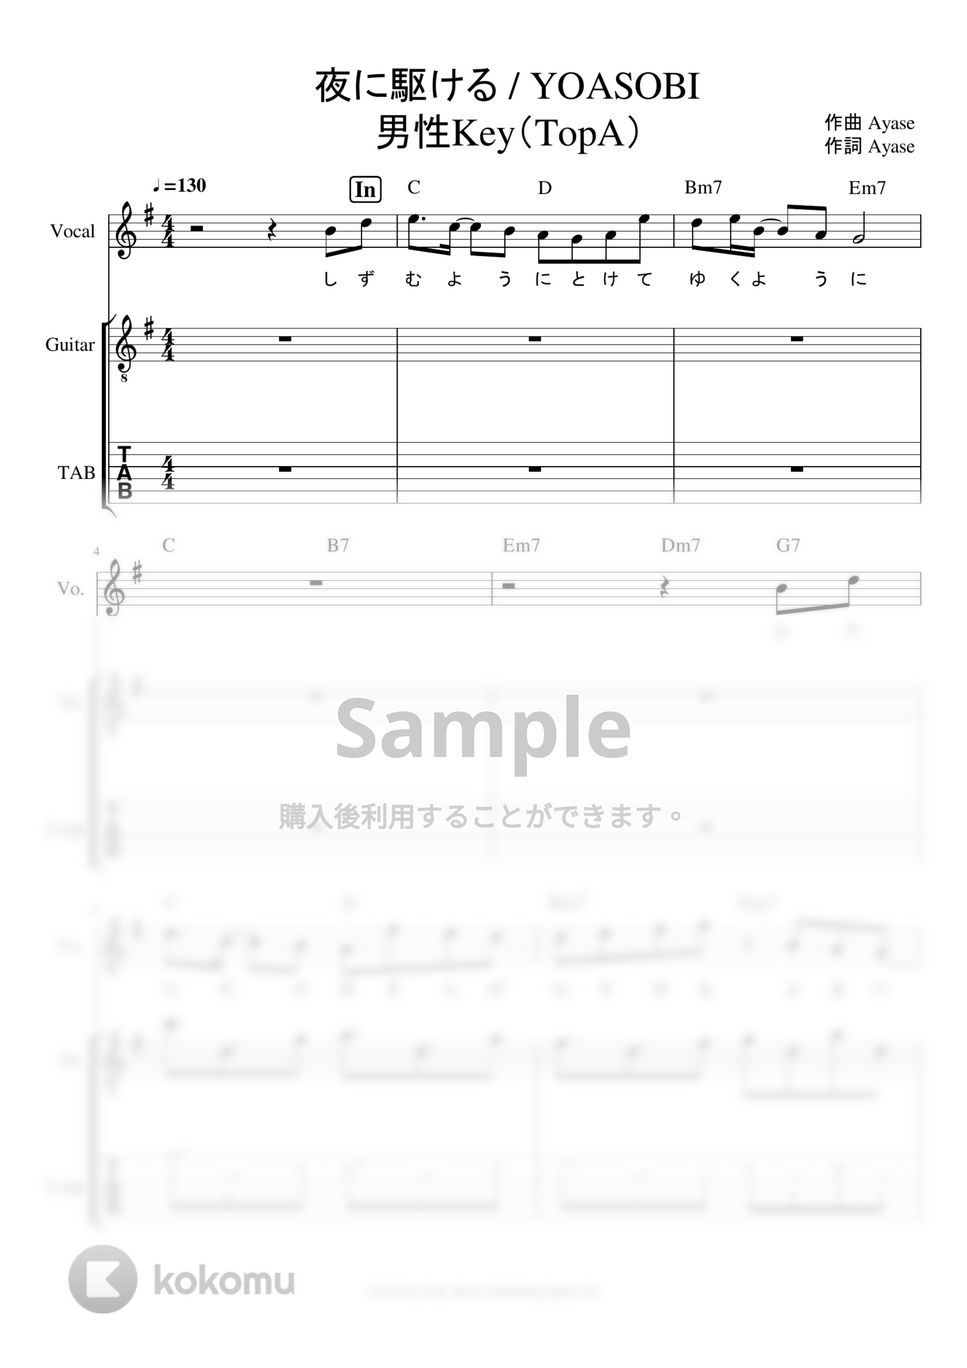 YOASOBI - 夜に駆ける ギタータブ譜※男声アレンジ (男声キーに編曲したギタータブ譜です。) by ましまし